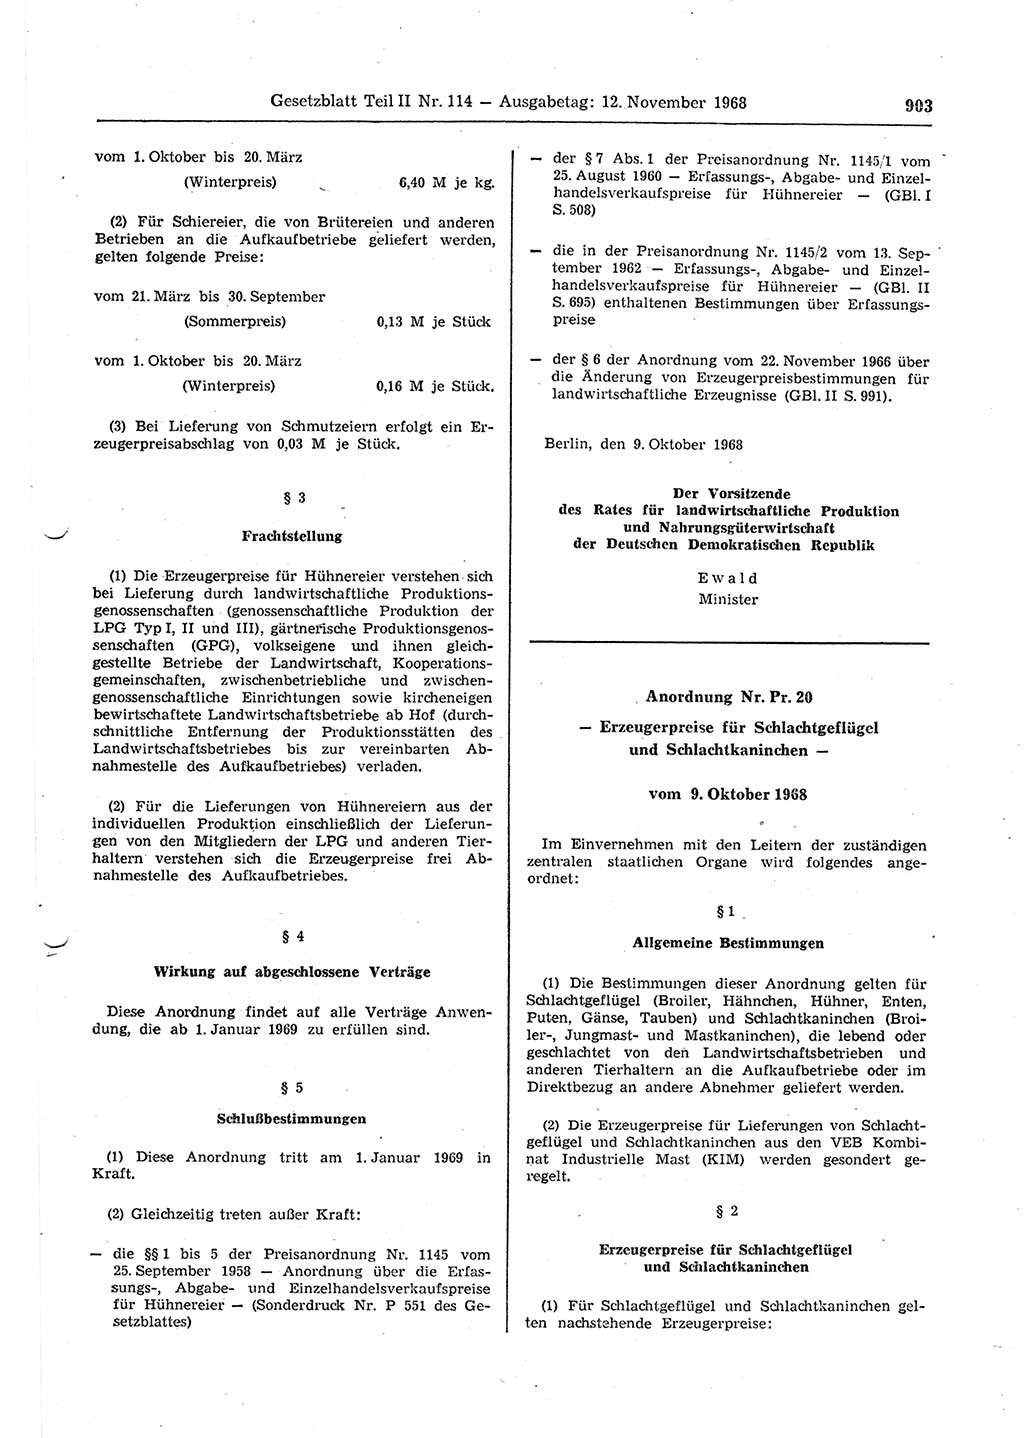 Gesetzblatt (GBl.) der Deutschen Demokratischen Republik (DDR) Teil ⅠⅠ 1968, Seite 903 (GBl. DDR ⅠⅠ 1968, S. 903)